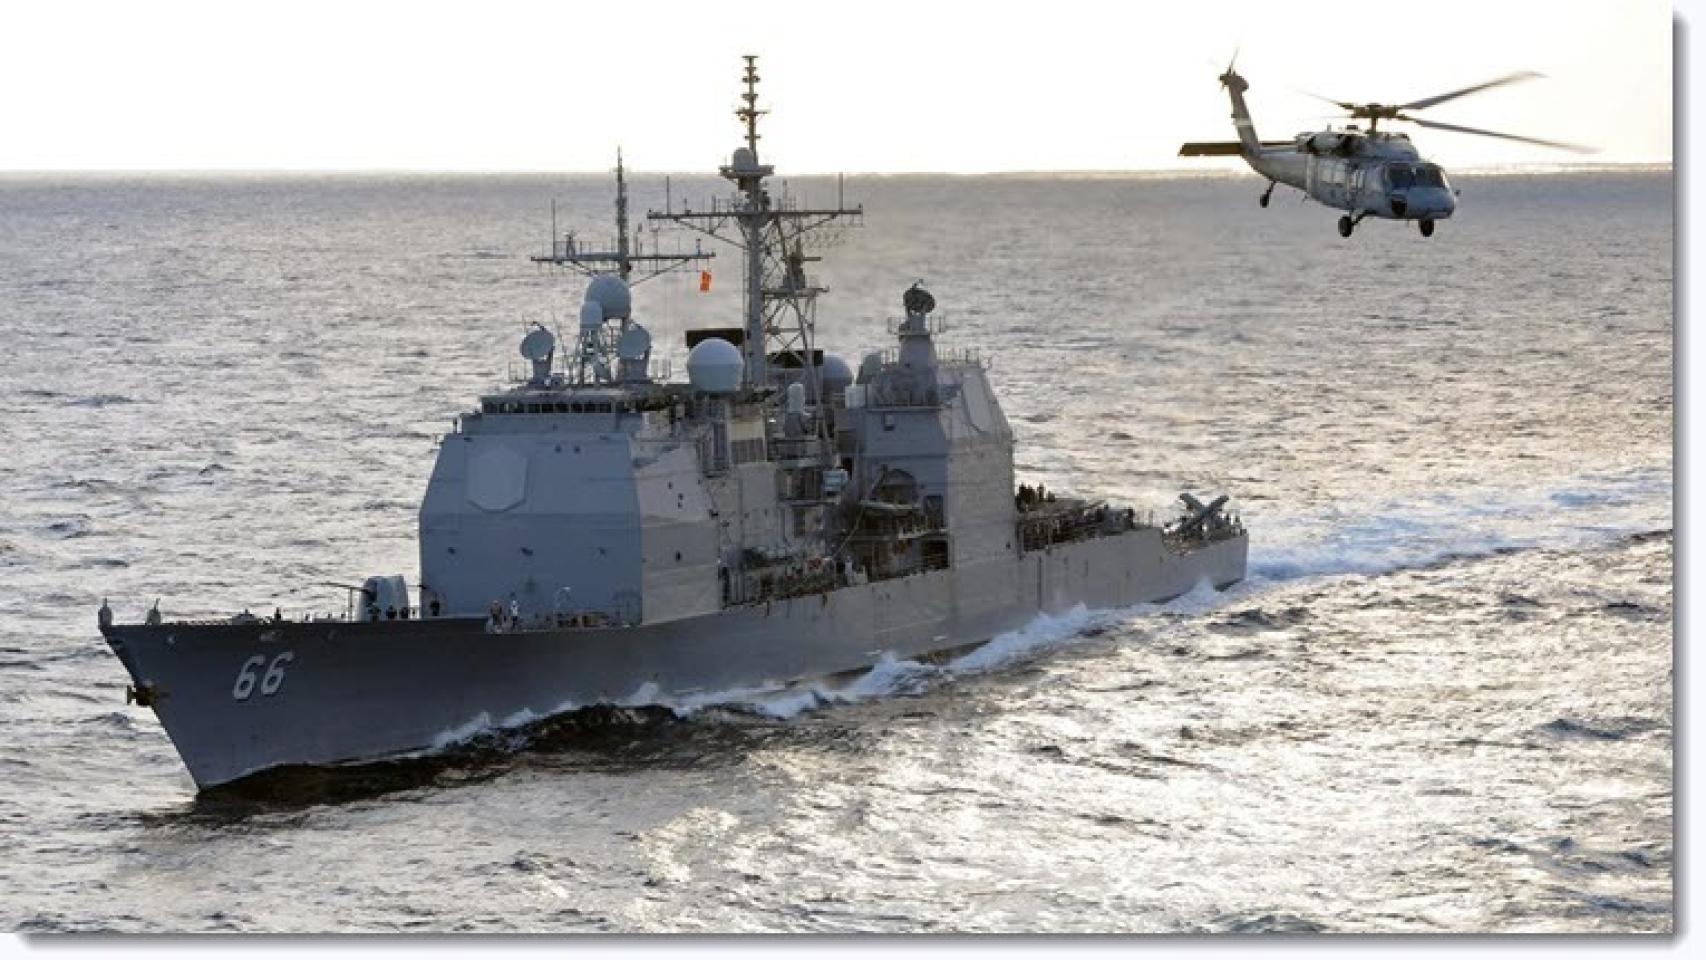 Escándalo sexual a bordo de un buque de guerra americano en plena lucha contra el ISIS imagen